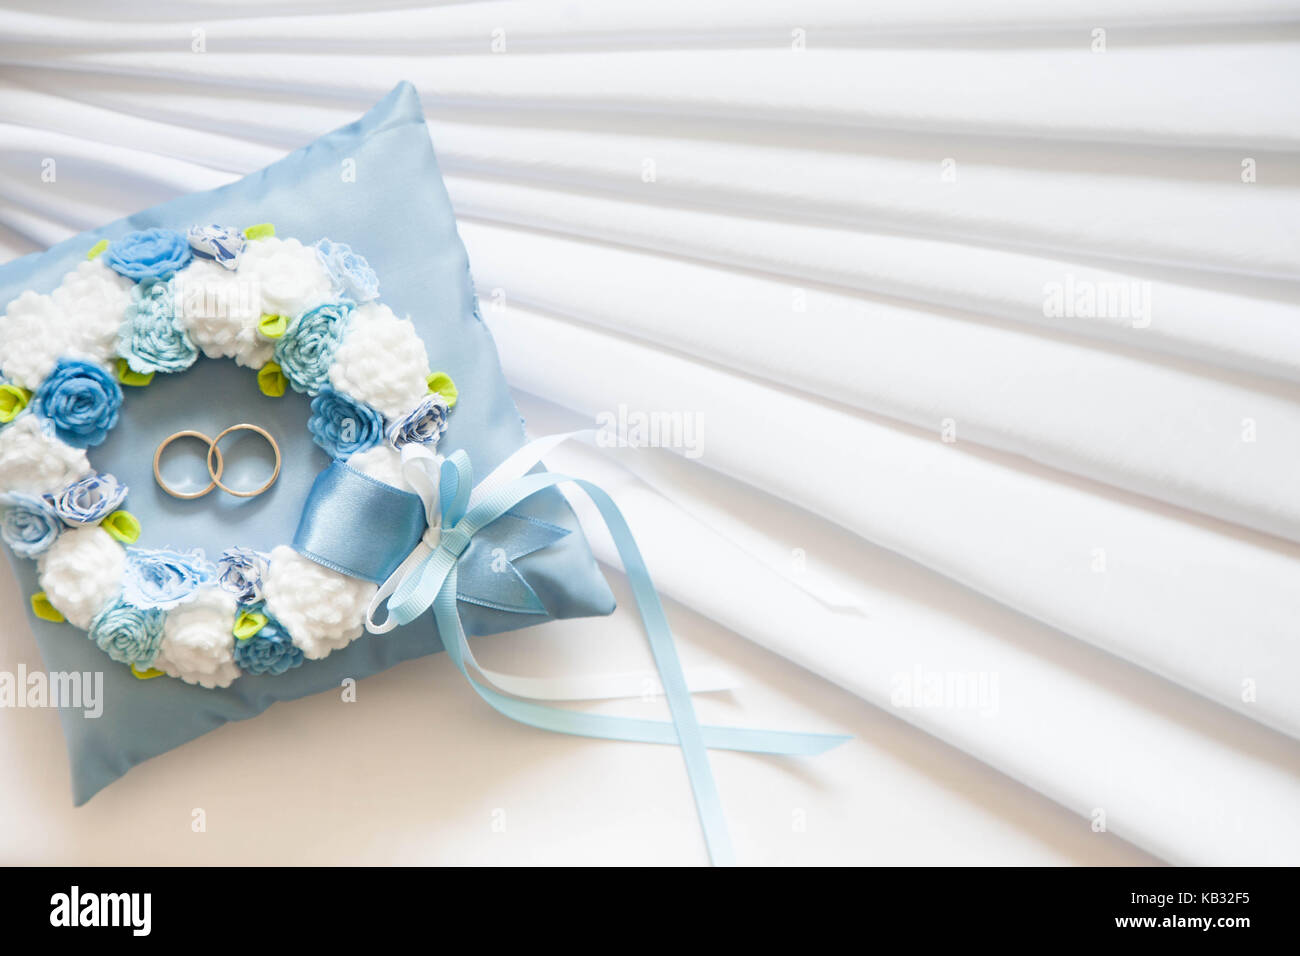 Goldene Hochzeit Ringe auf das kleine blau und türkis Kissen  Stockfotografie - Alamy